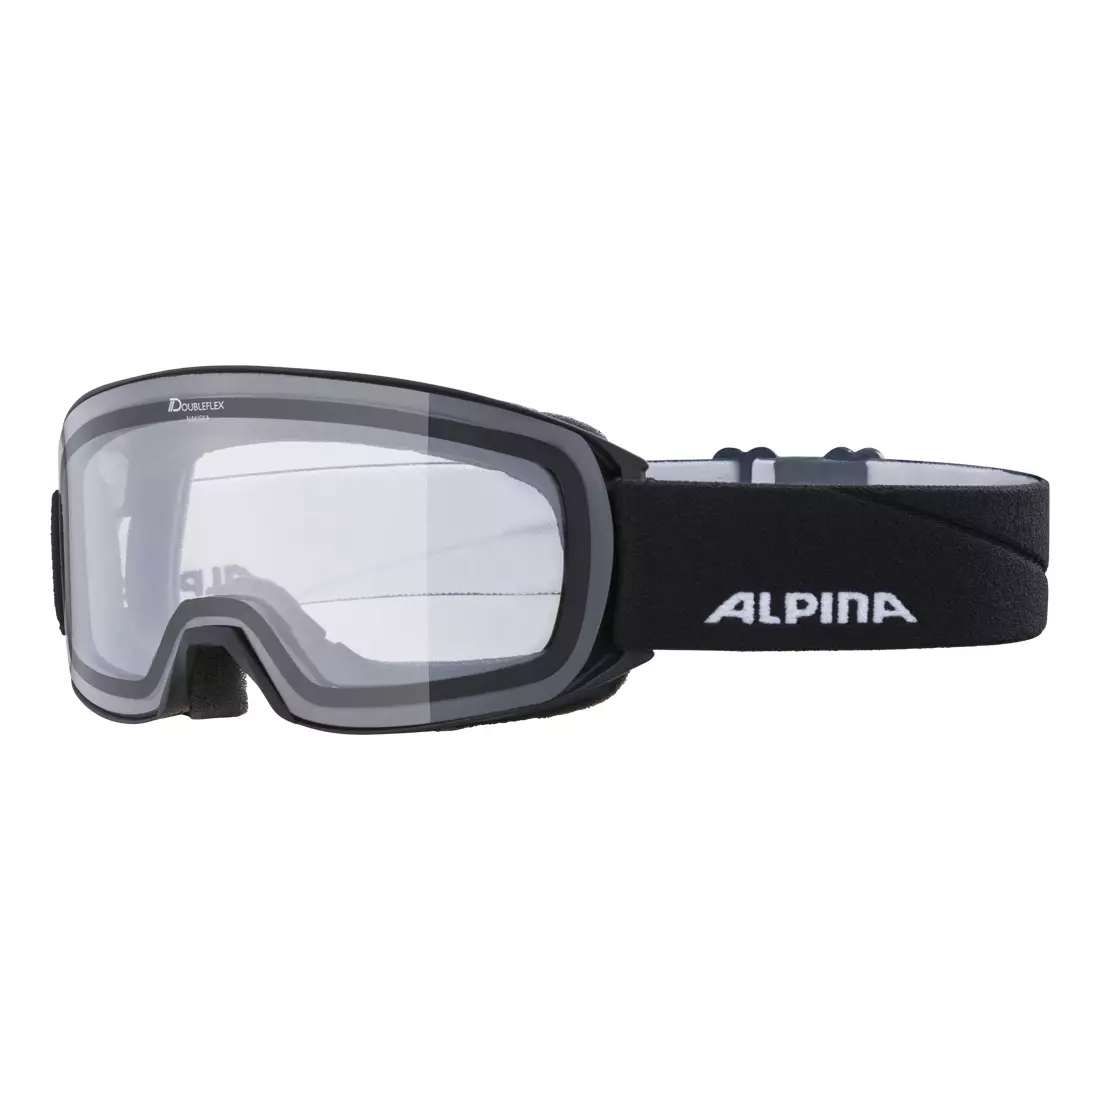 ALPINA gogle narciarskie / snowboardowe CLEAR M40 NAKISKA czarny mat S0A7281133